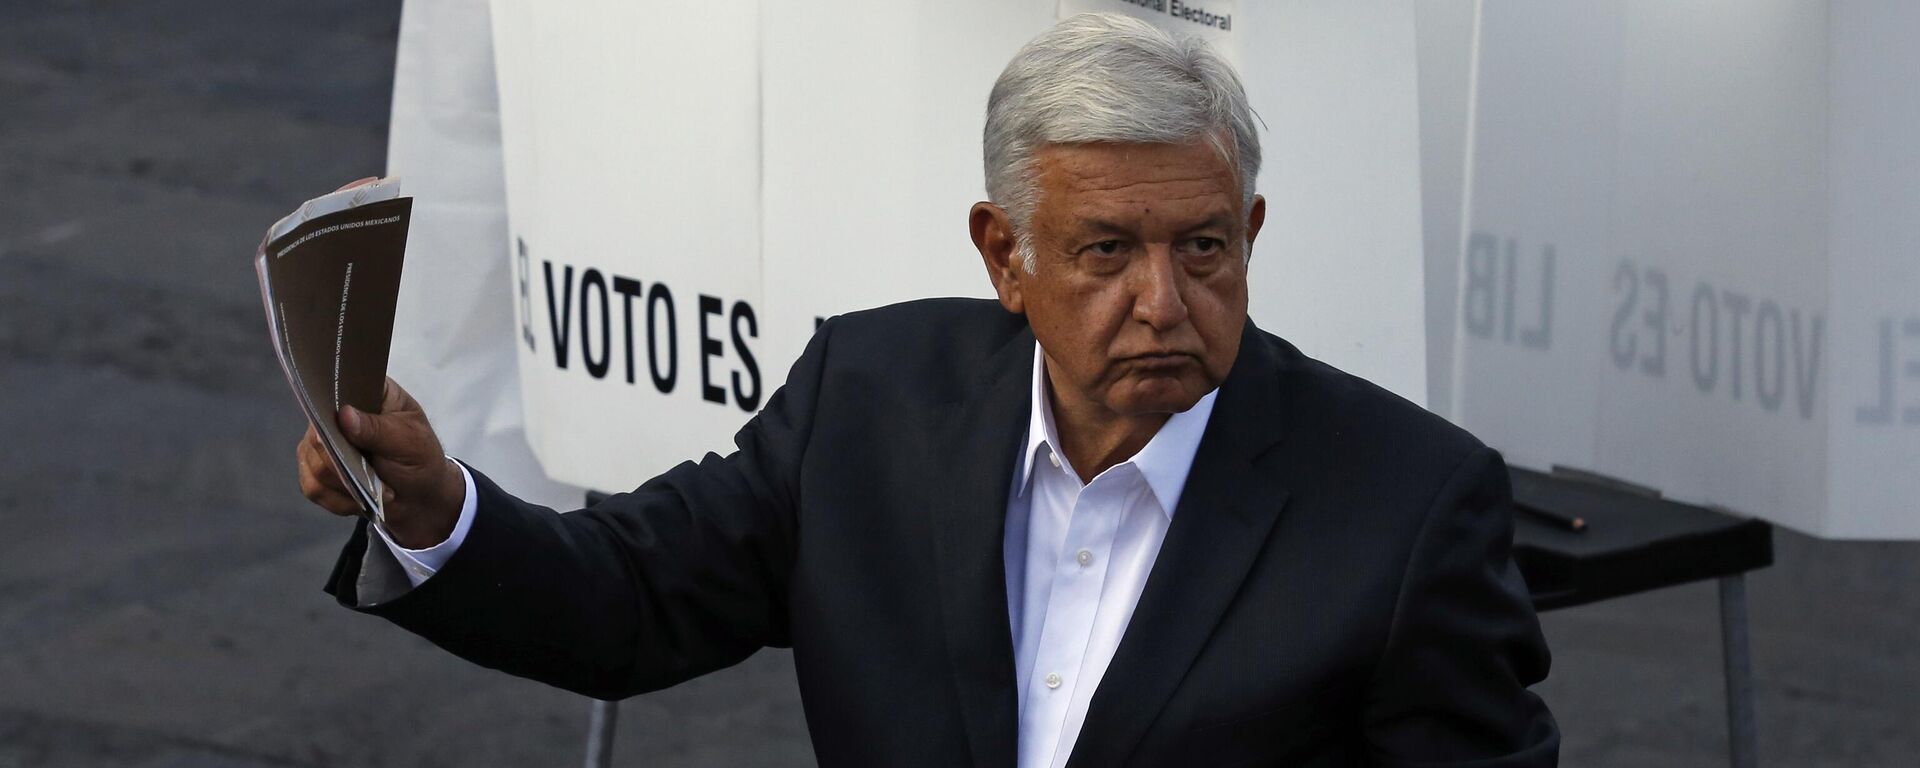 El entonces candidato a la Presidencia de México por Morena, Andrés Manuel López Obrador. - Sputnik Mundo, 1920, 24.01.2024